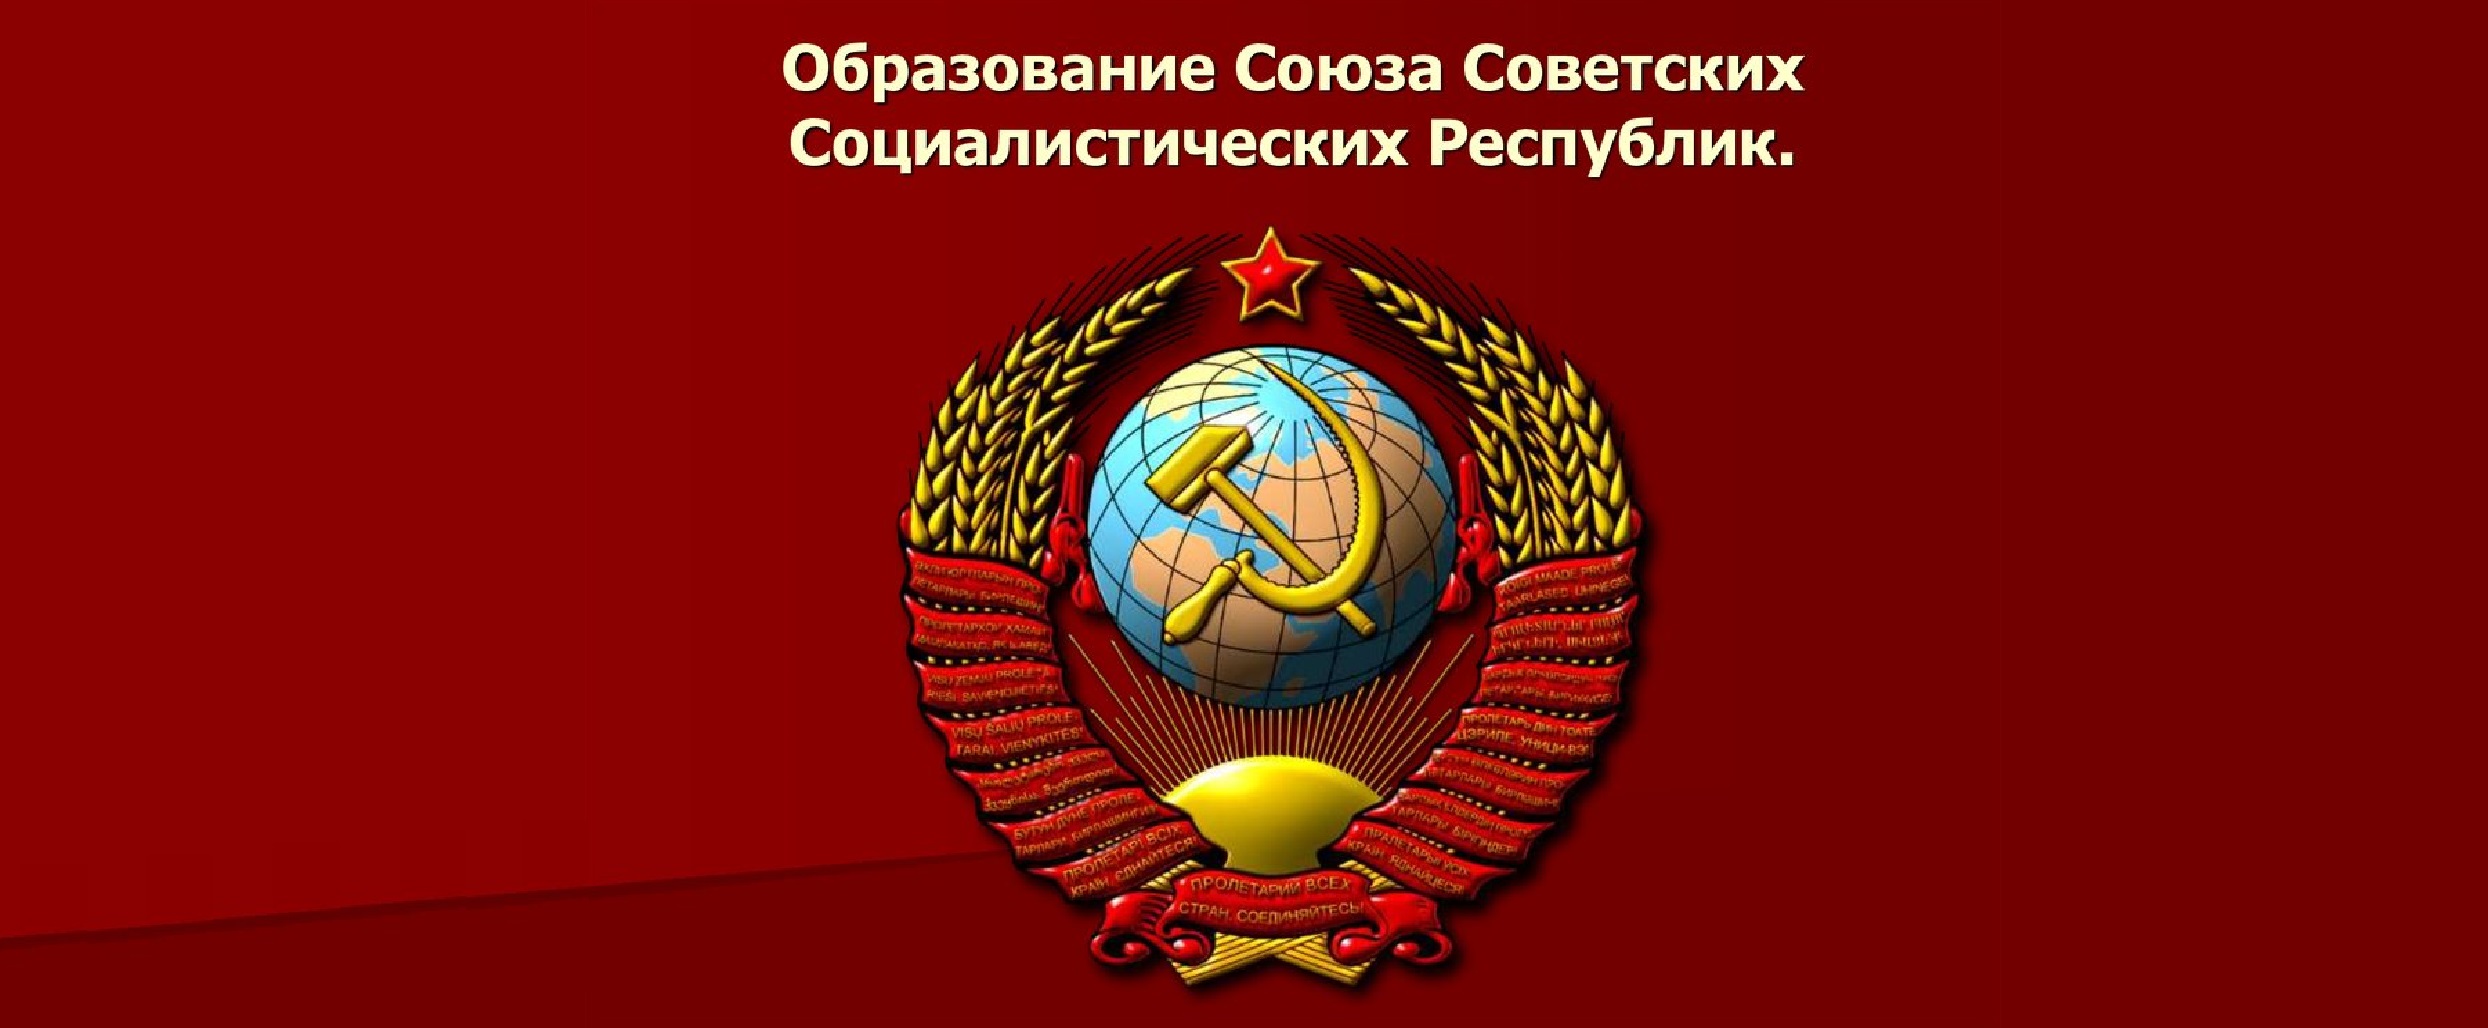 30 декабря – 100 лет со дня образования СССР.